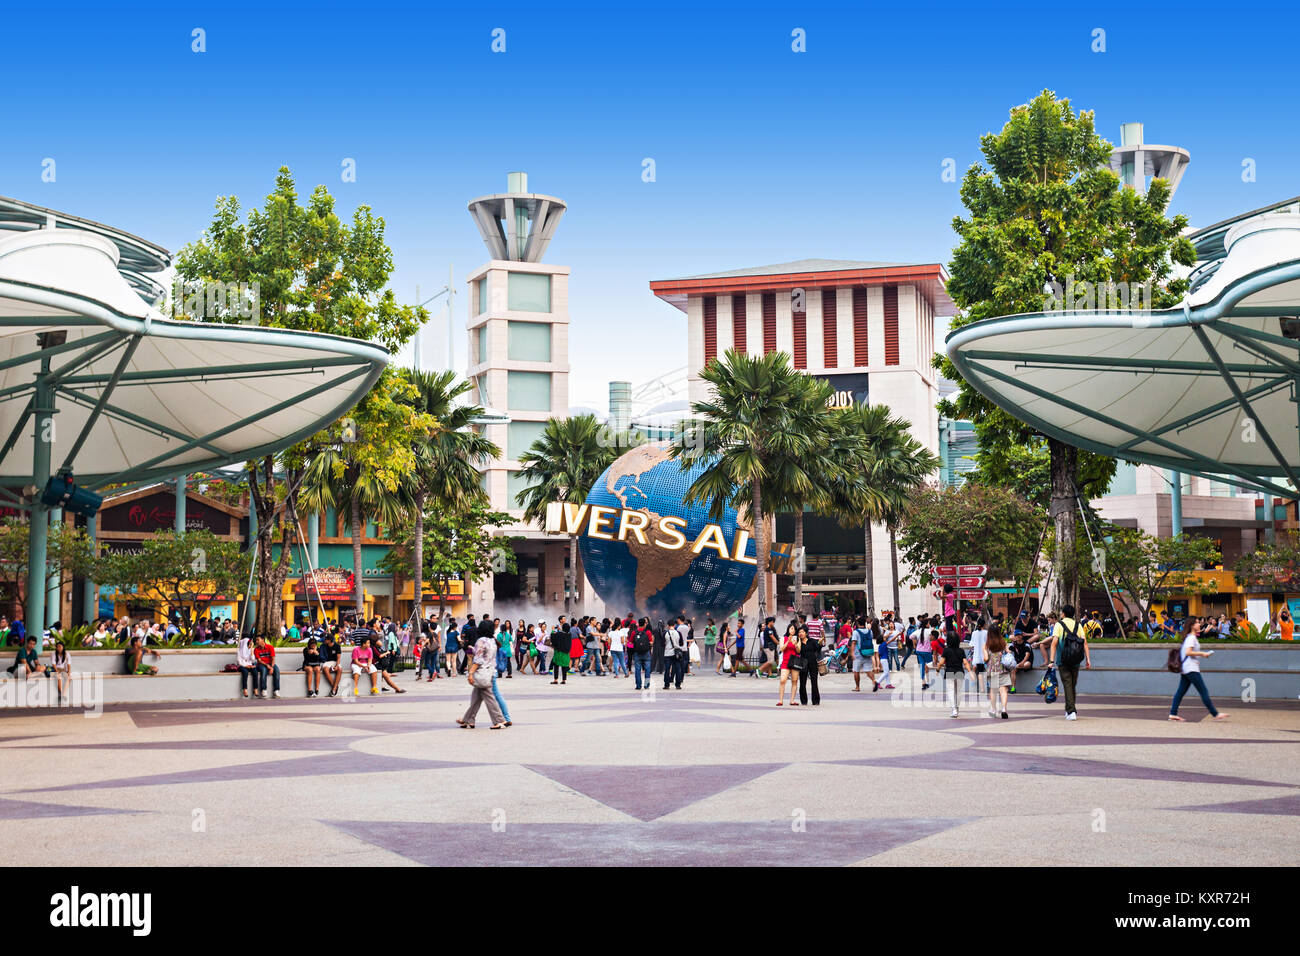 SINGAPORE - Ottobre 17, 2014: Universal Studios di Singapore è un parco a tema situato all'interno di Resorts World Sentosa sull'Isola di Sentosa, Singapore. Foto Stock